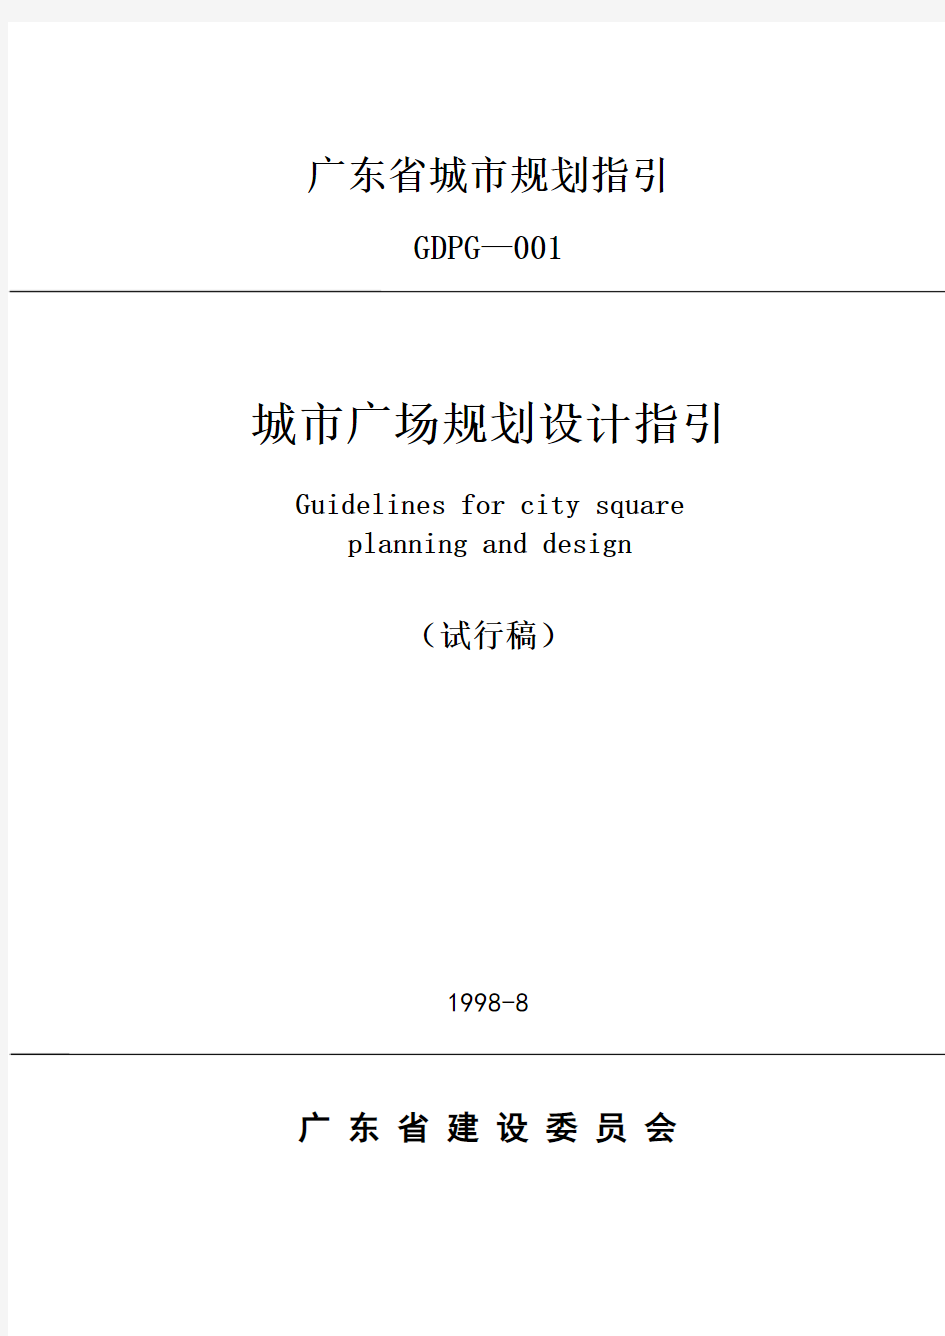 广东省城市规划指引-城市广场规划设计指引